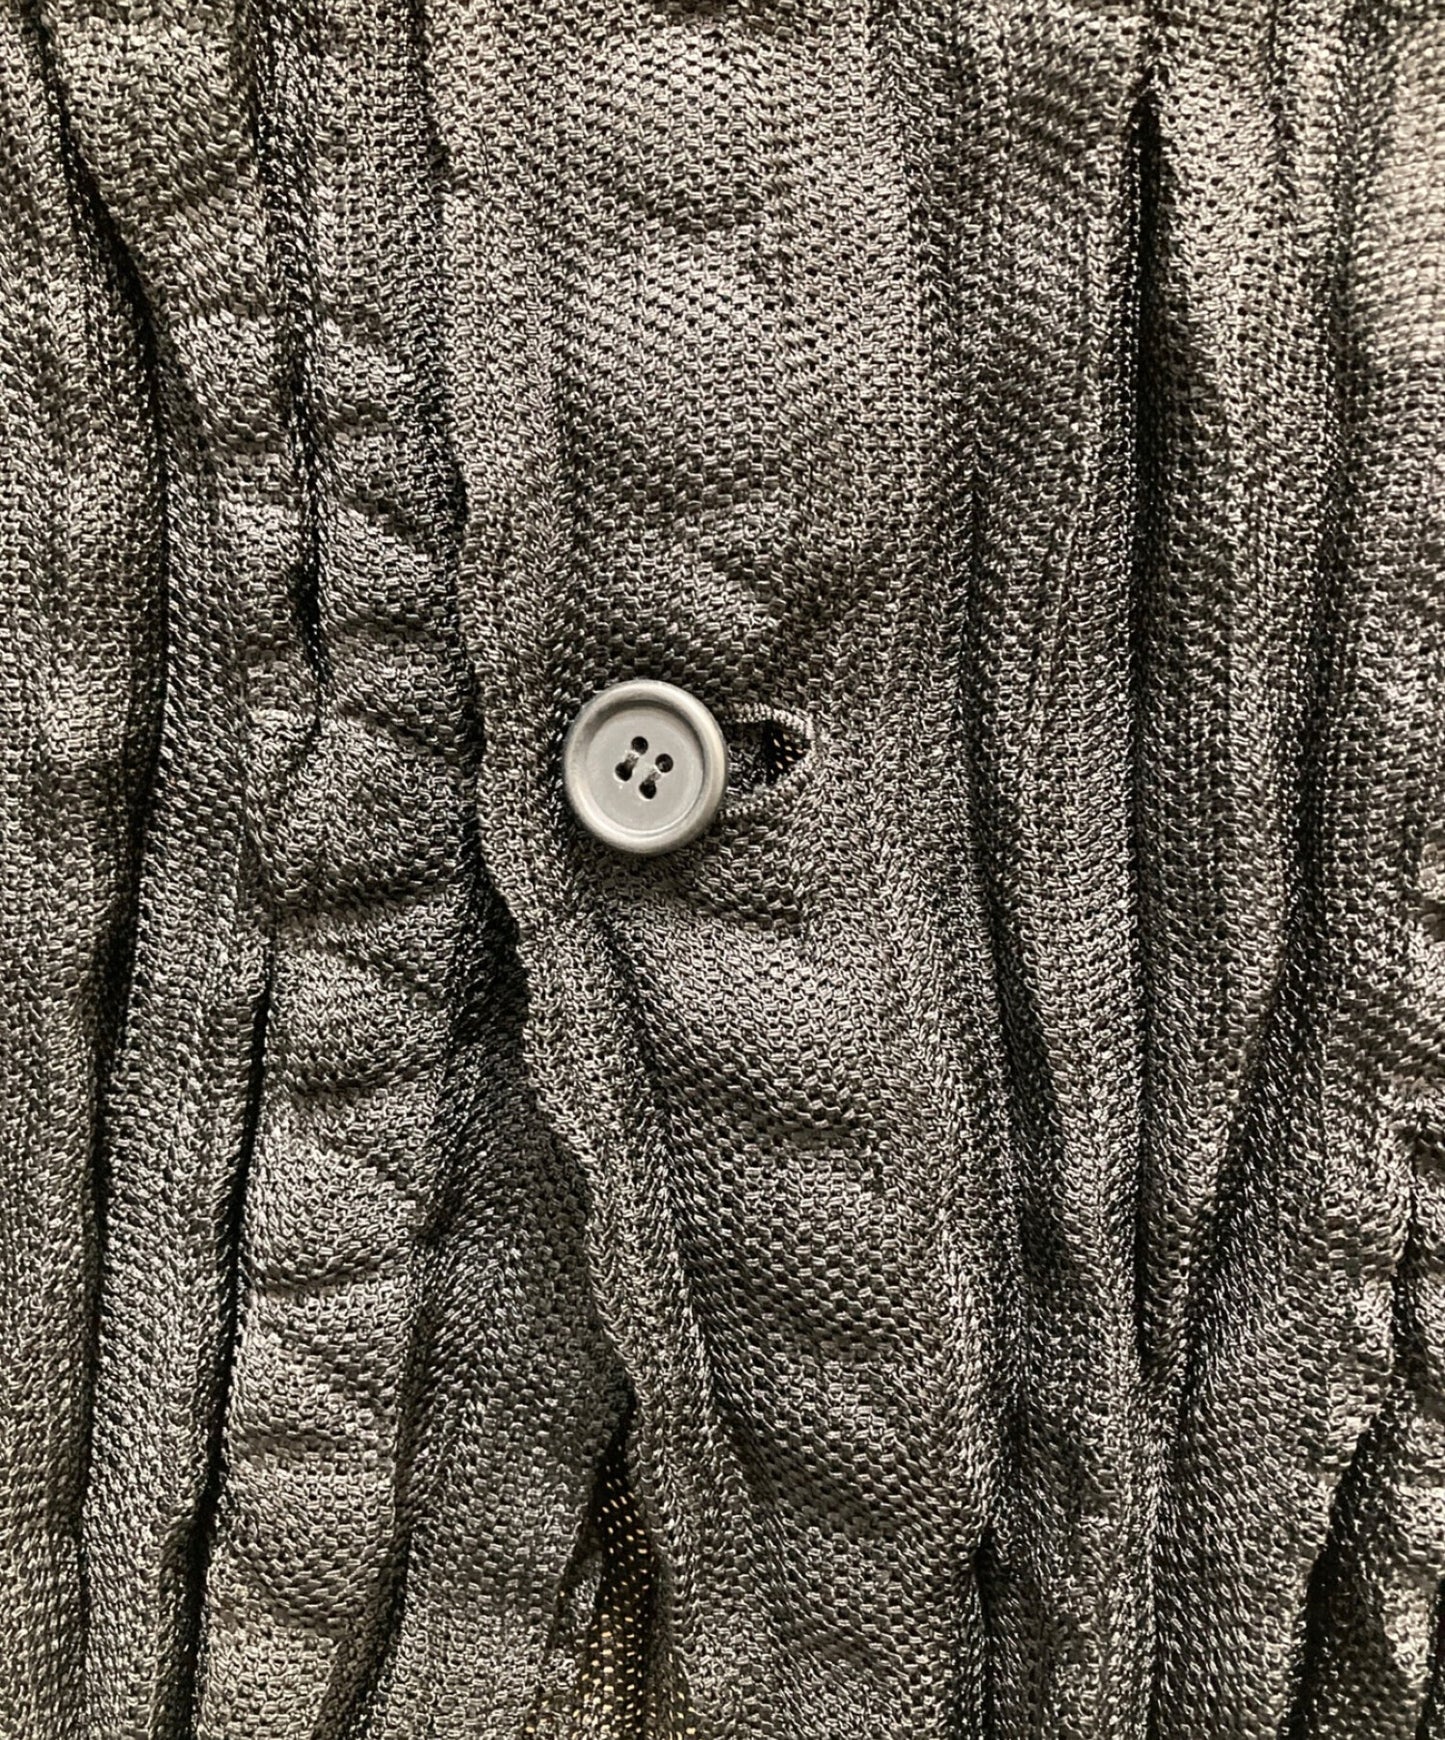 [Pre-owned] ISSEY MIYAKE MEN full-length jacket ME61KD087